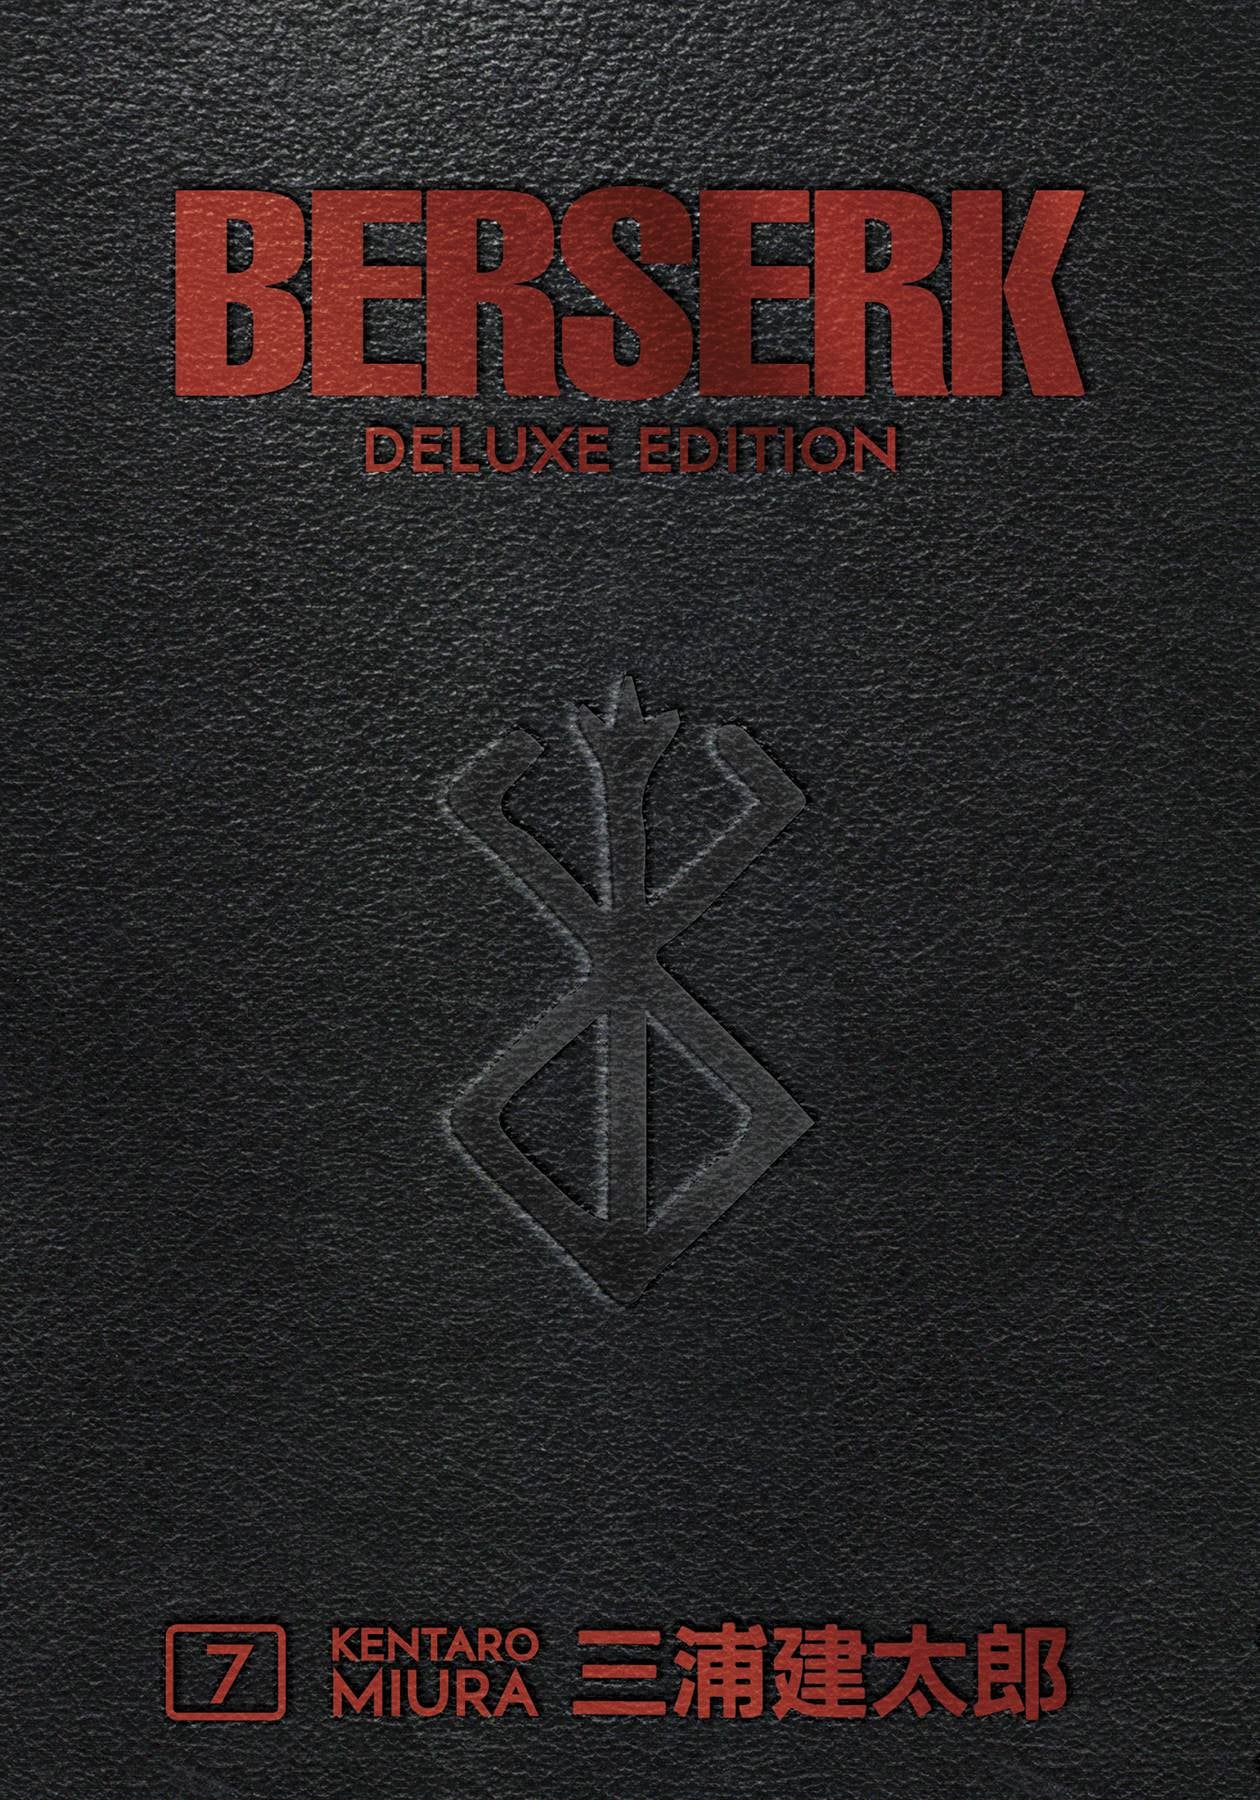 BERSERK DELUXE EDITION VOLUME 07